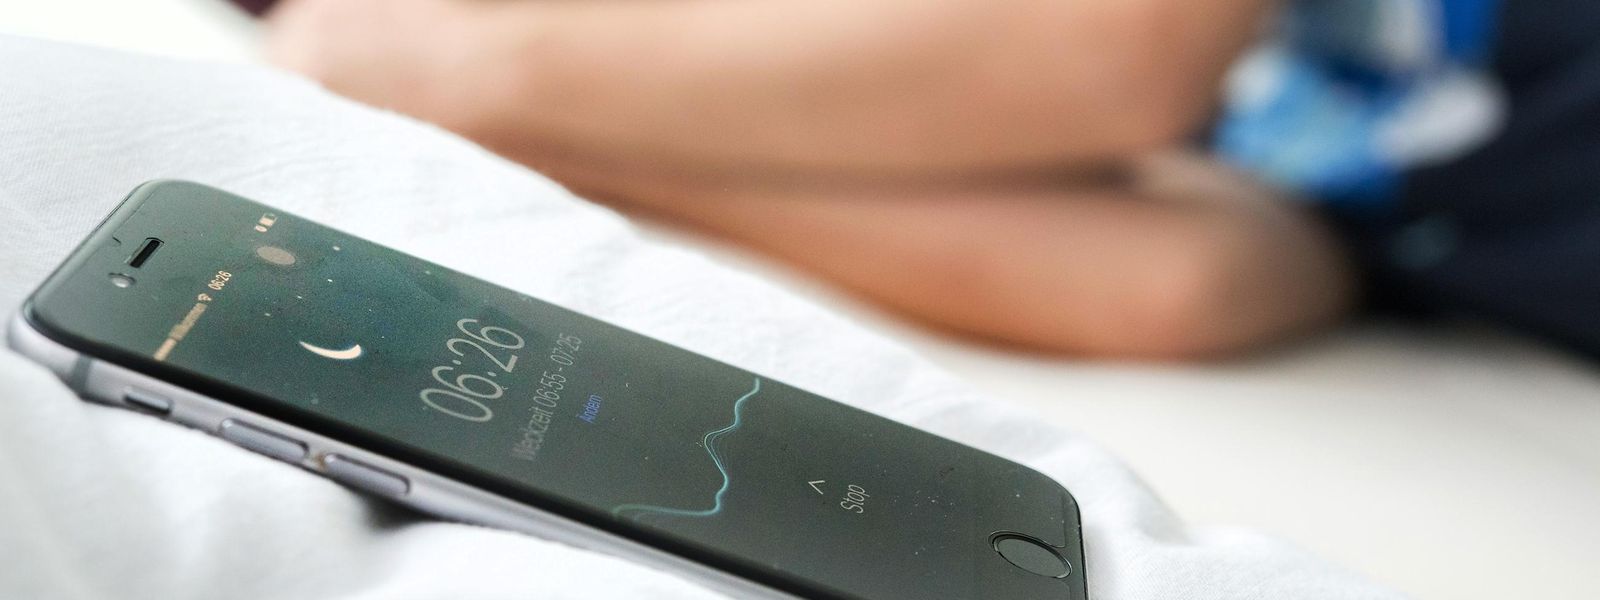 Apps wie Sleep Cycle Alarm Clock messen auch die Bewegungen im Schlaf.